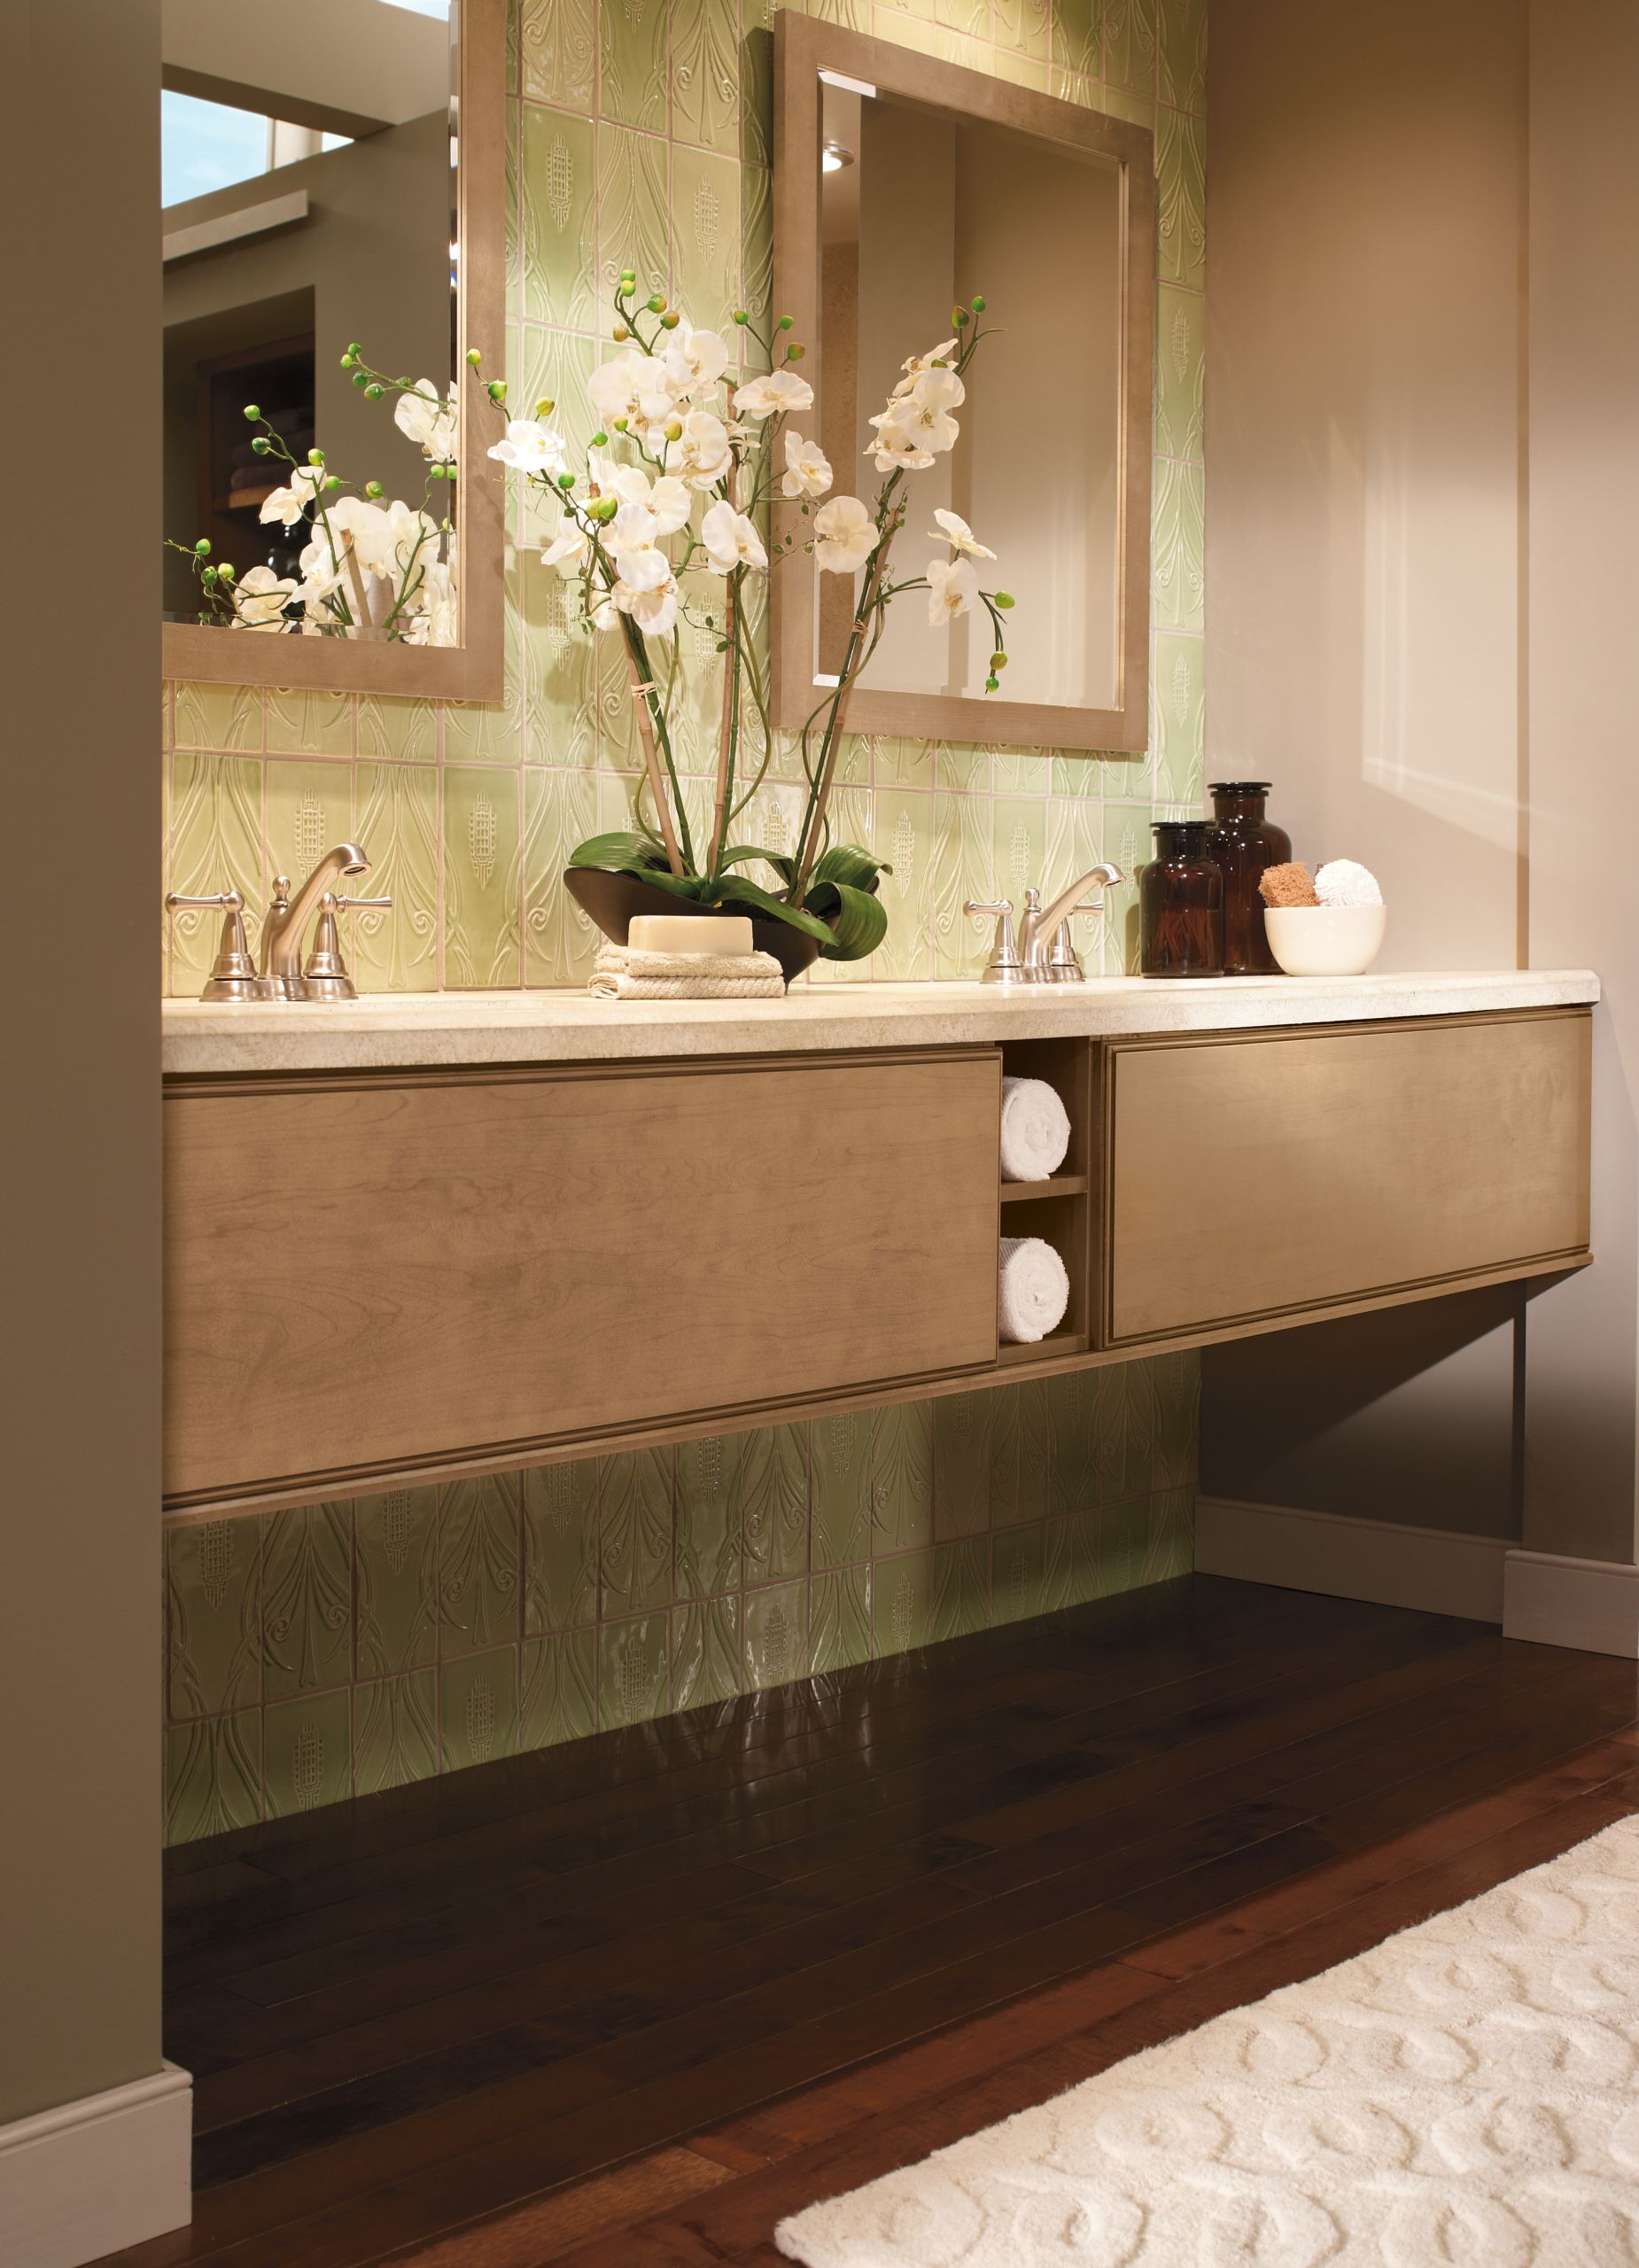 Bathroom Vanity Designs
 Bathroom Design Ideas Top 5 Ideas